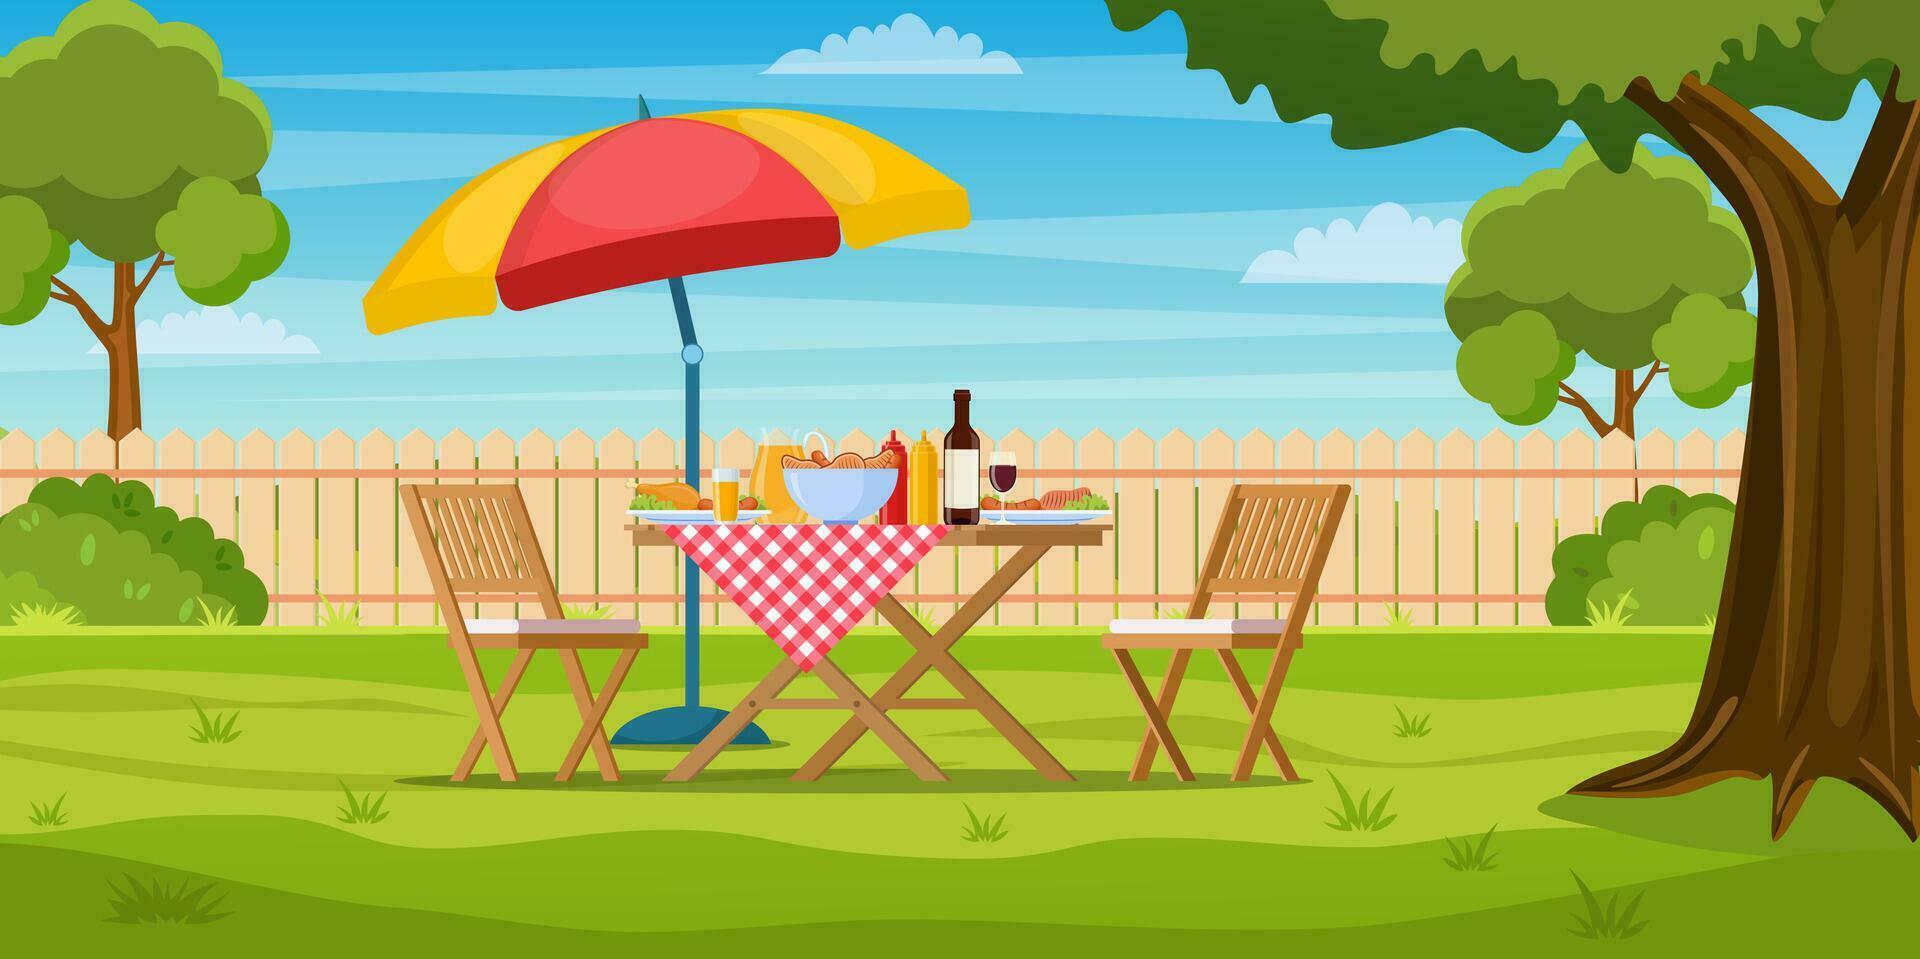 barbecue partij in de achtertuin met schutting, bomen, struiken. picknick met barbecue Aan zomer gazon in park of tuin voedsel Aan tafel, stoelen en paraplu. vector illustratie in vlak ontwerp